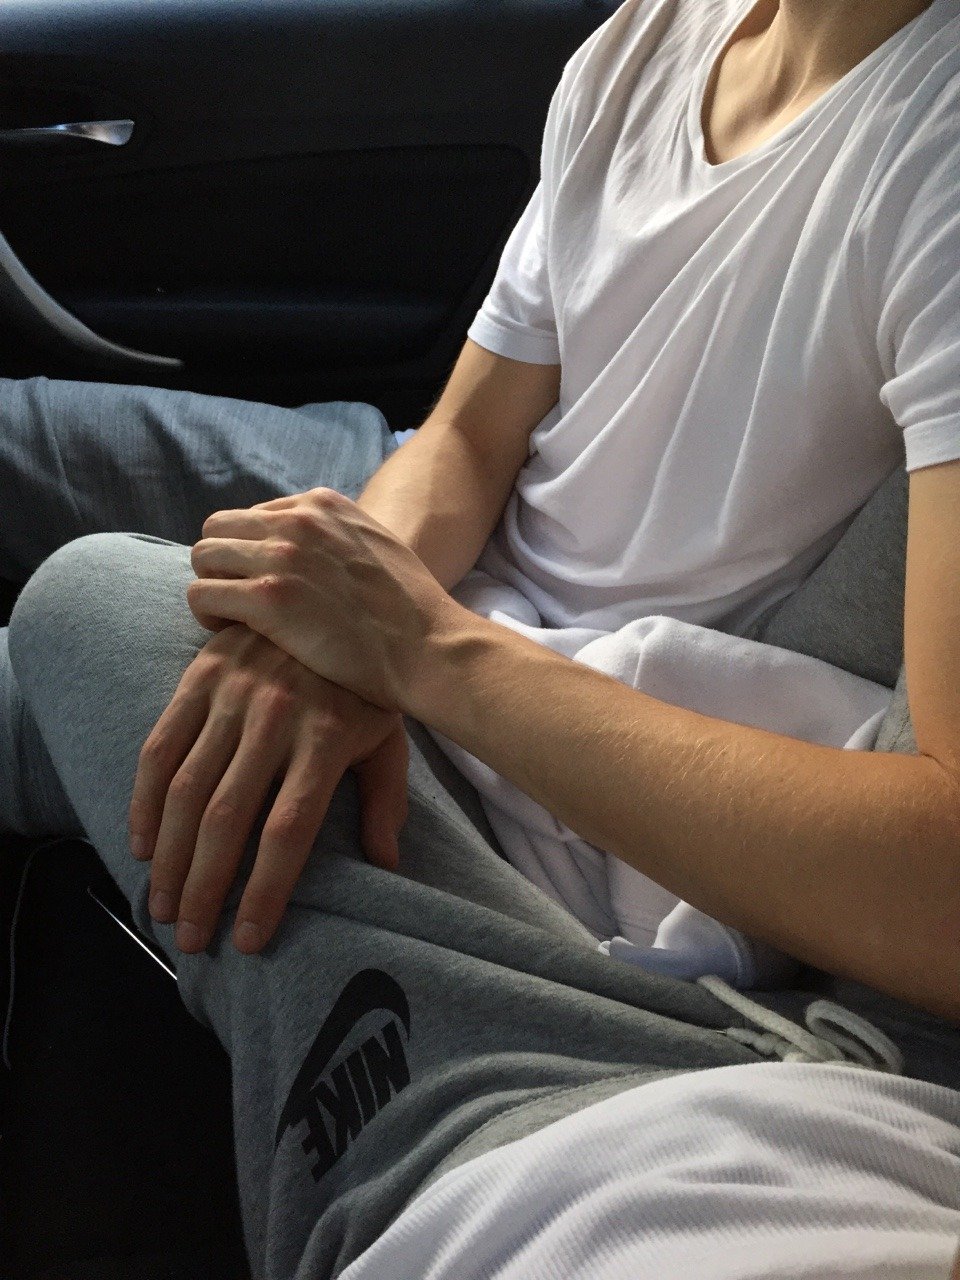 Мужская рука на коленке в авто